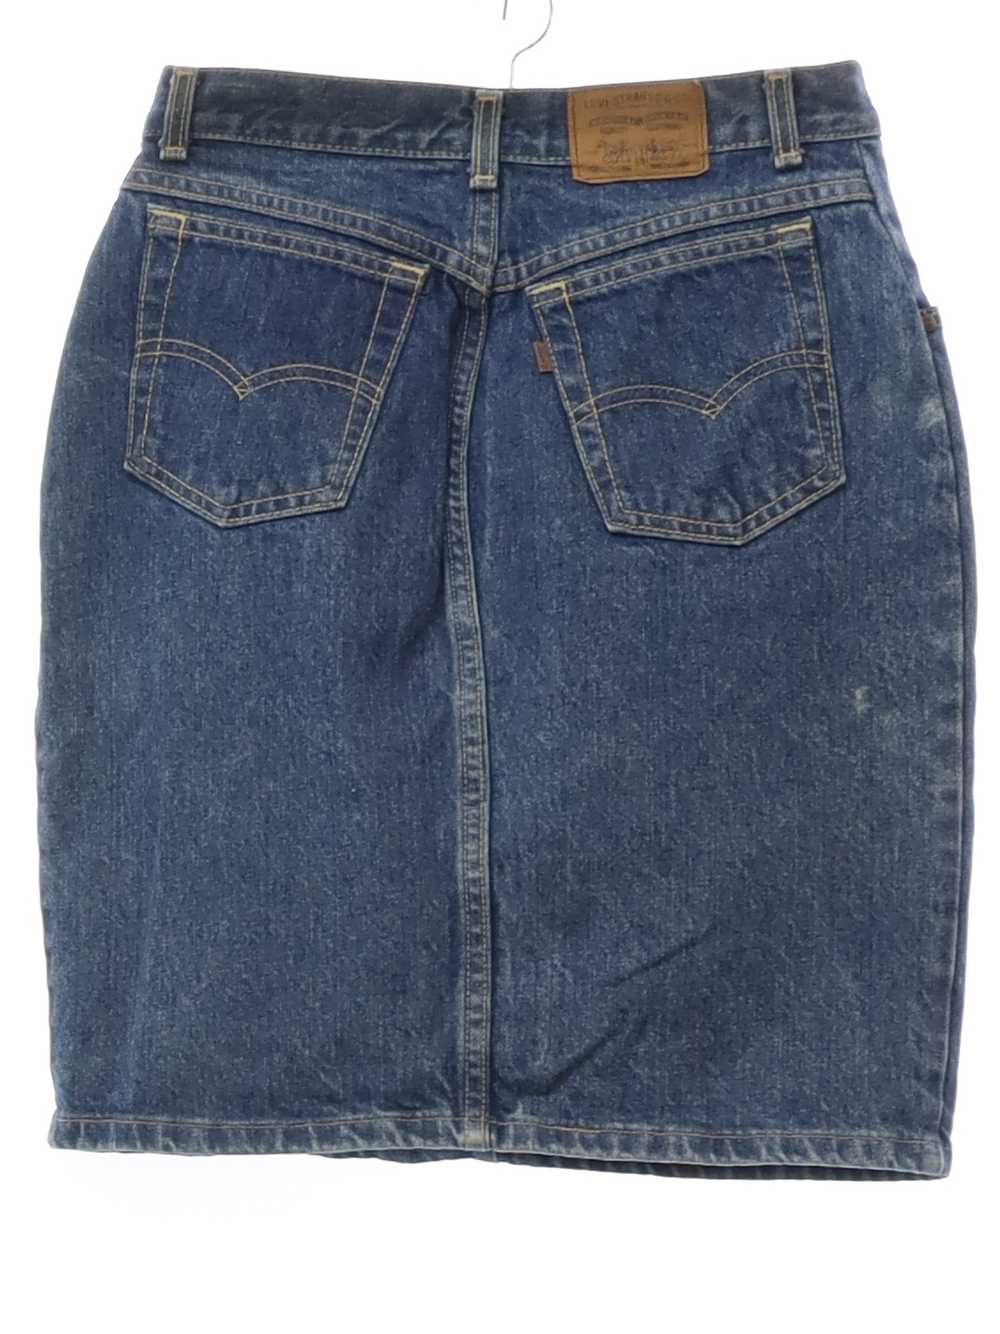 1980's Levis USA Levis Denim Jeans Skirt - image 3